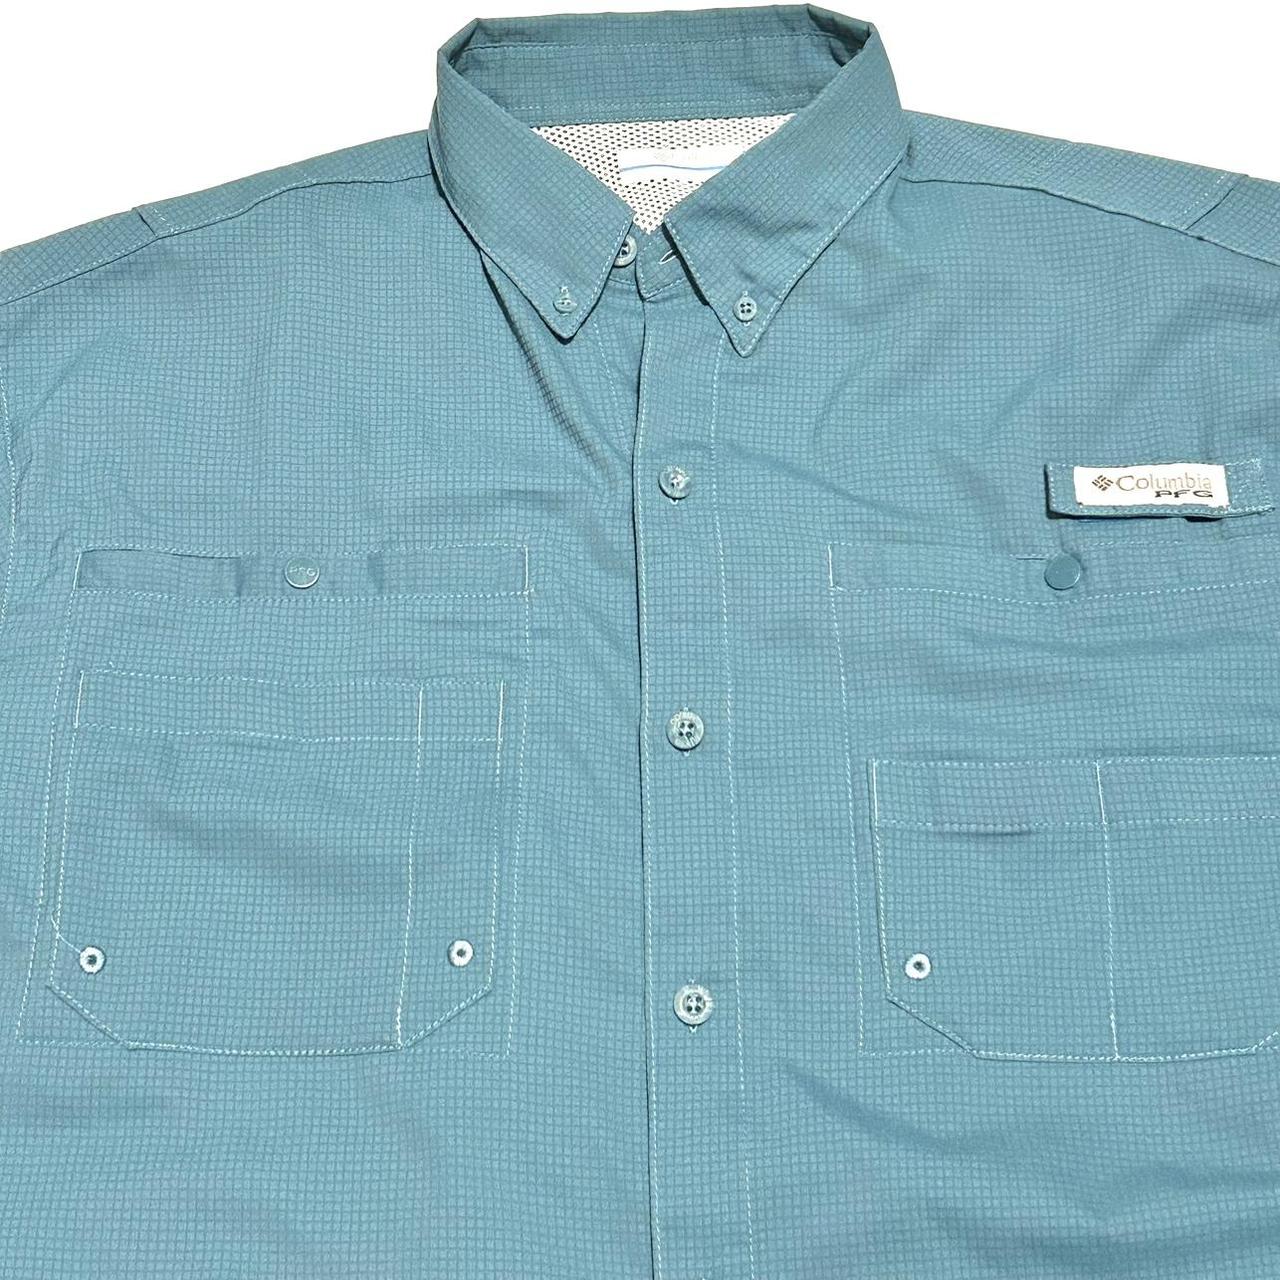 Columbia PFG Button Up Shirt Men's Size M - Depop